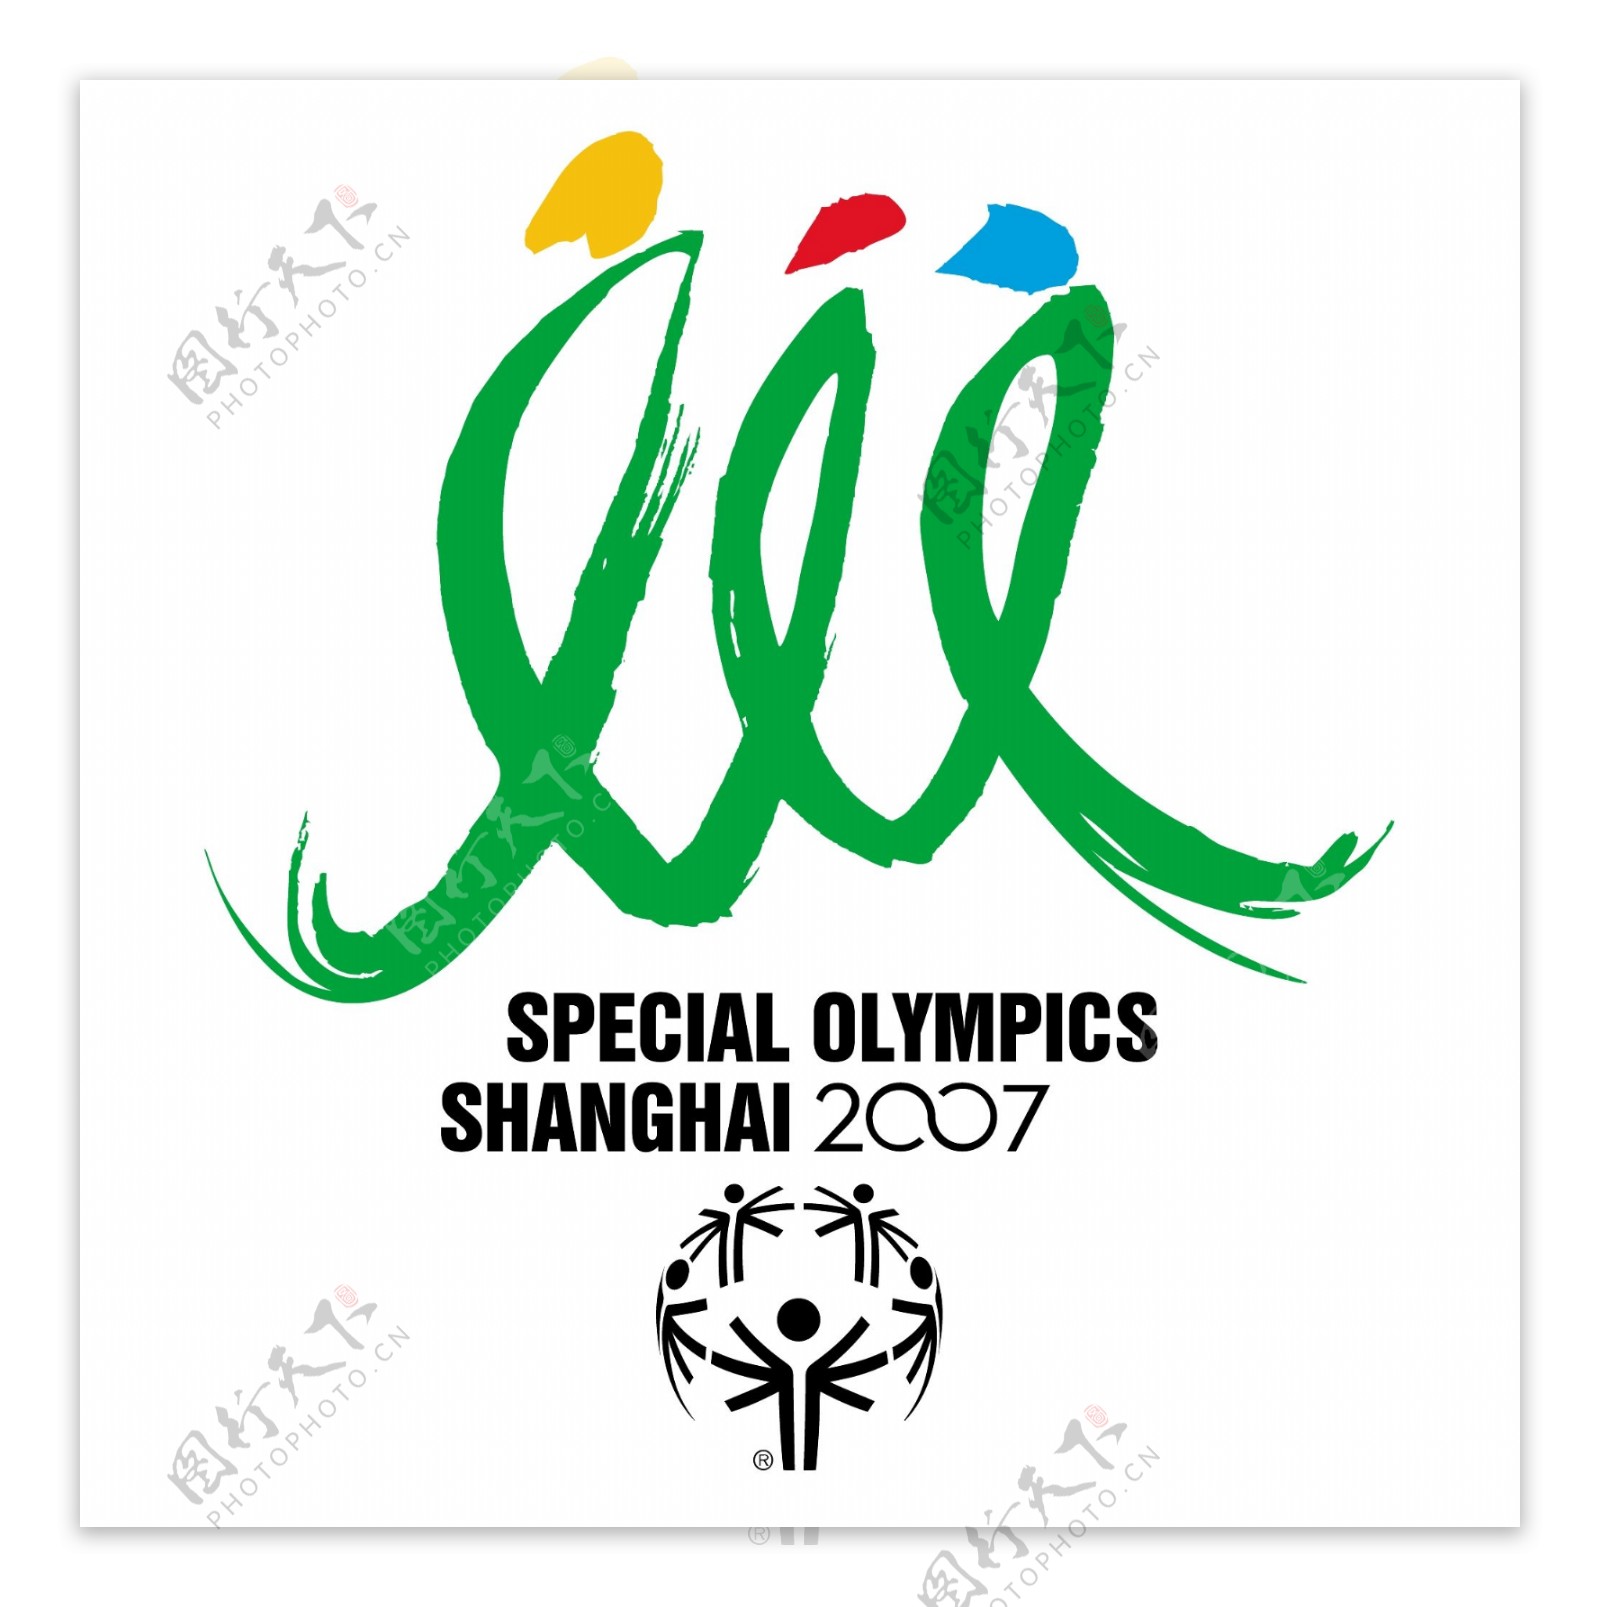 特殊奥运会的上海2007